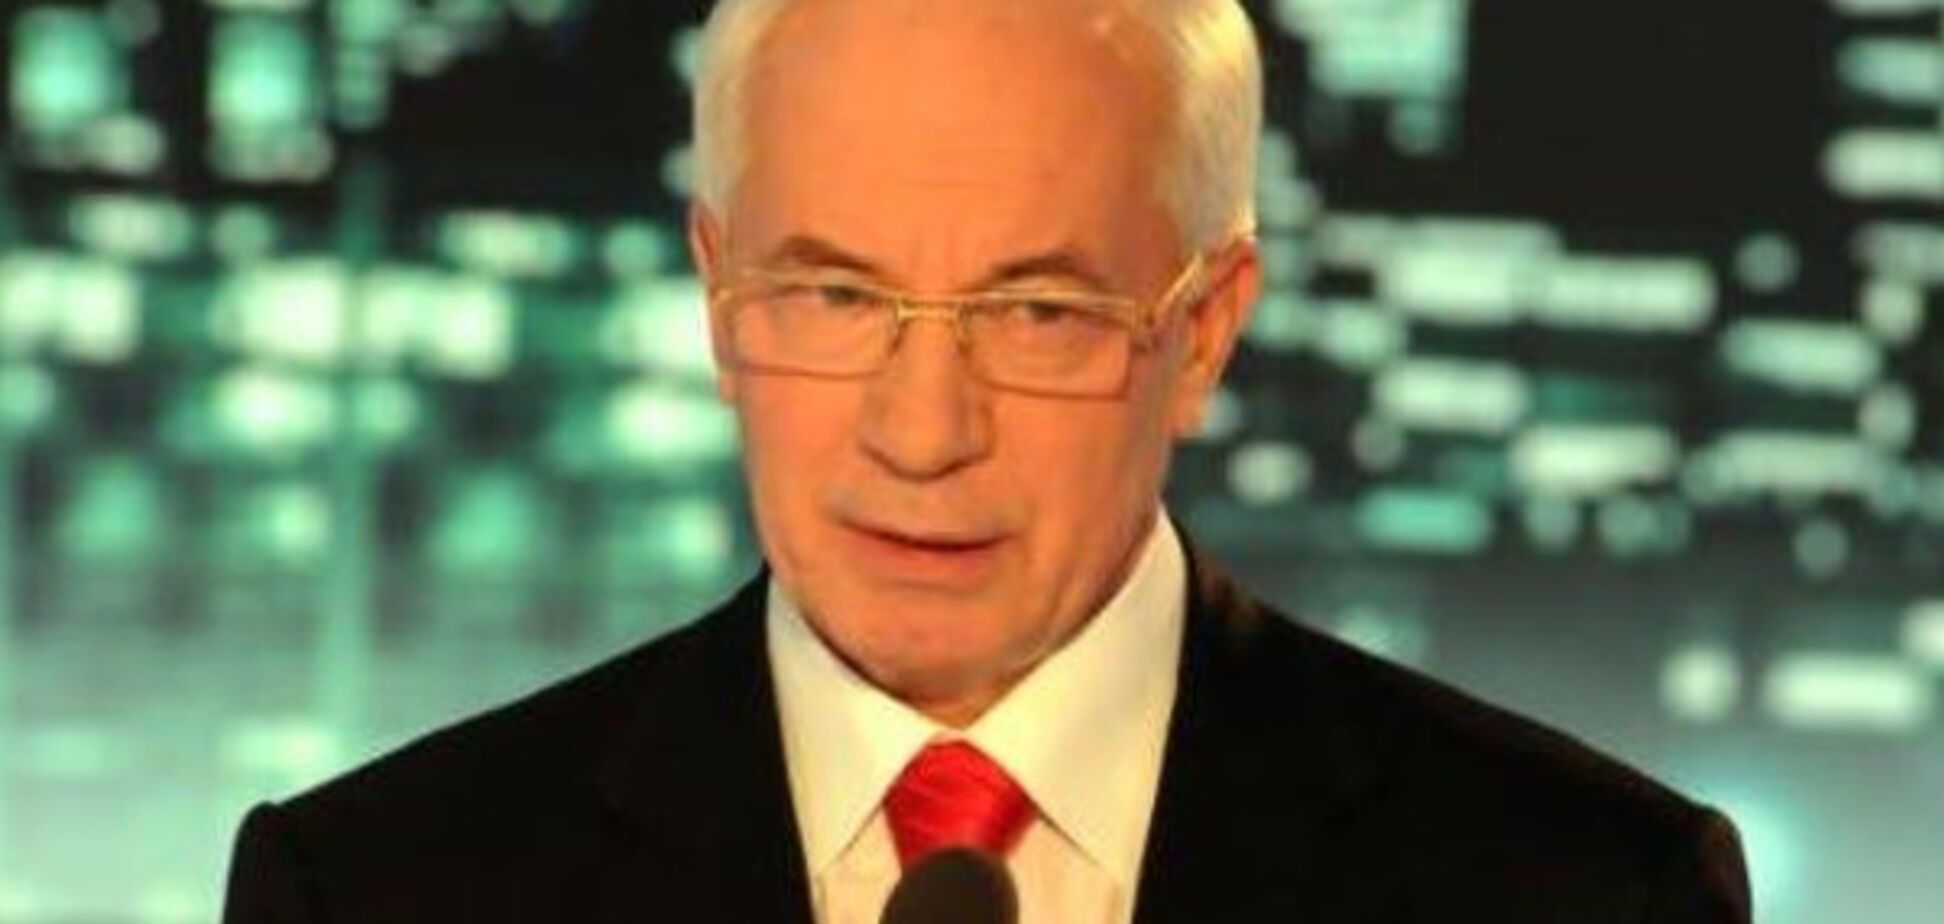 Микола Азаров